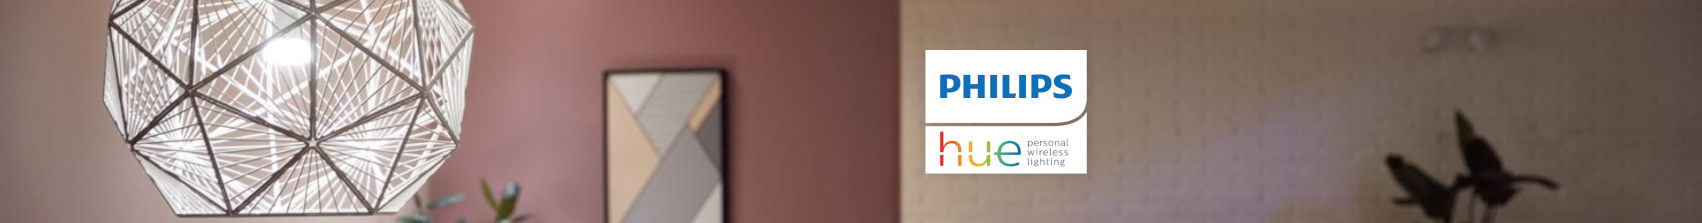  Comprar productos Philips Hue | Domos Planet ES